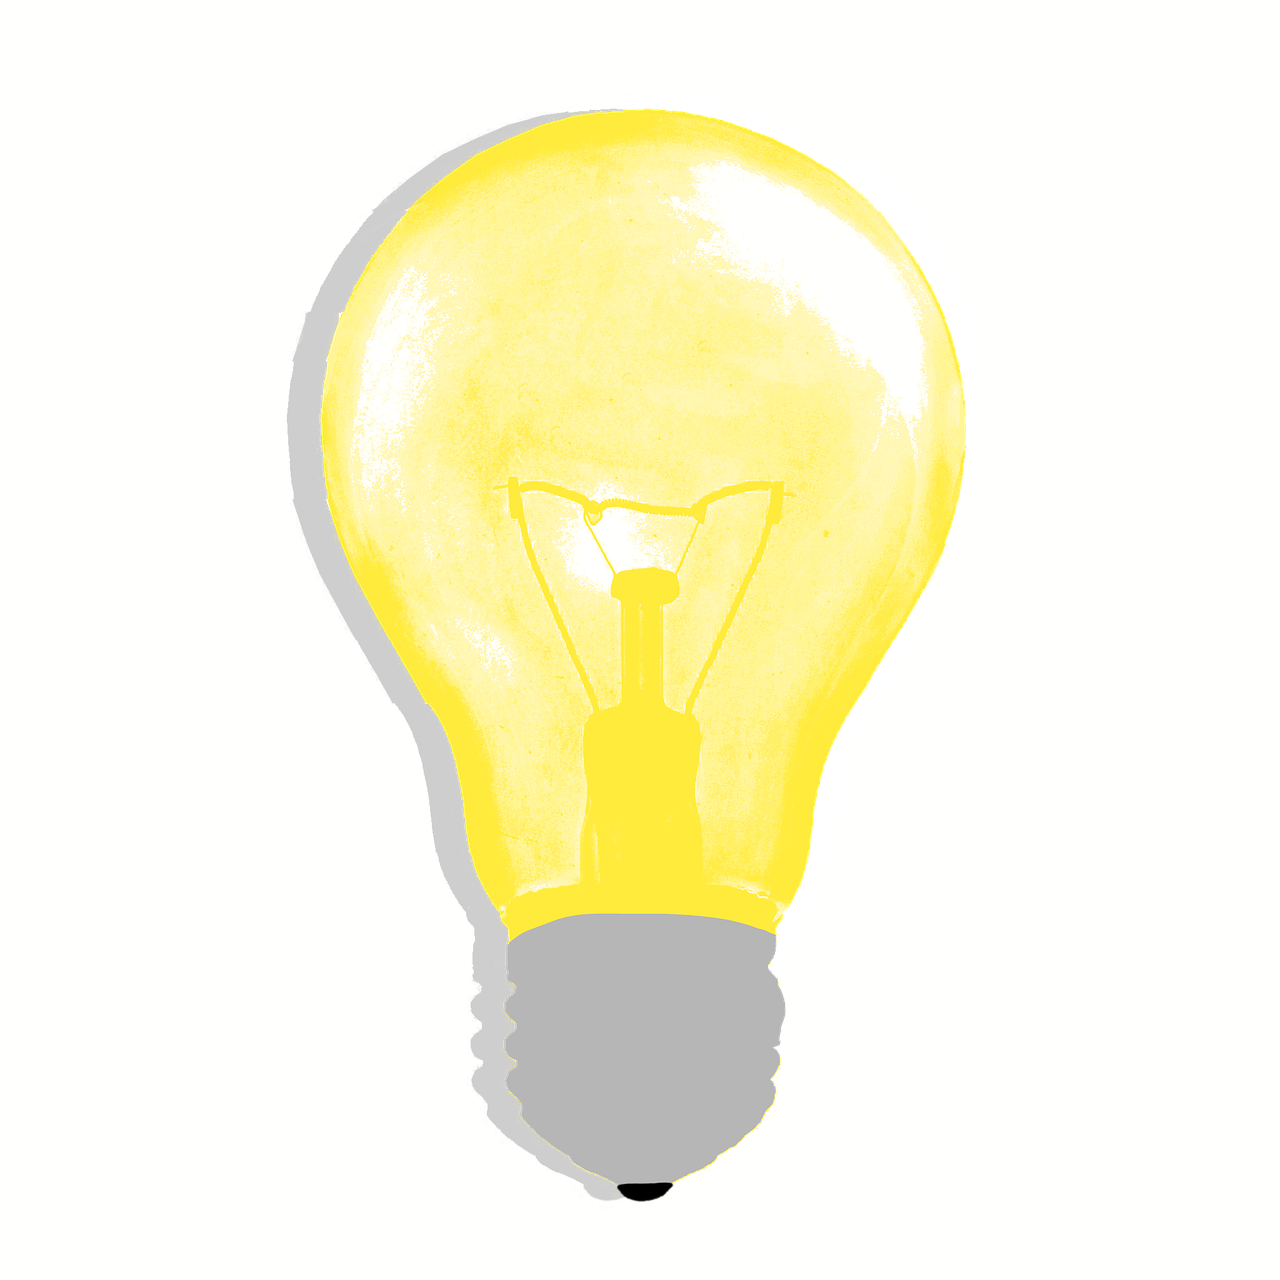 Lemputė, Įkvėpimas, Idėjos, Inovacijos, Kūrybiškumas, Motyvacija, Kontempliacija, Vaizduotė, Elektrinė Lempa, Koncepcijos